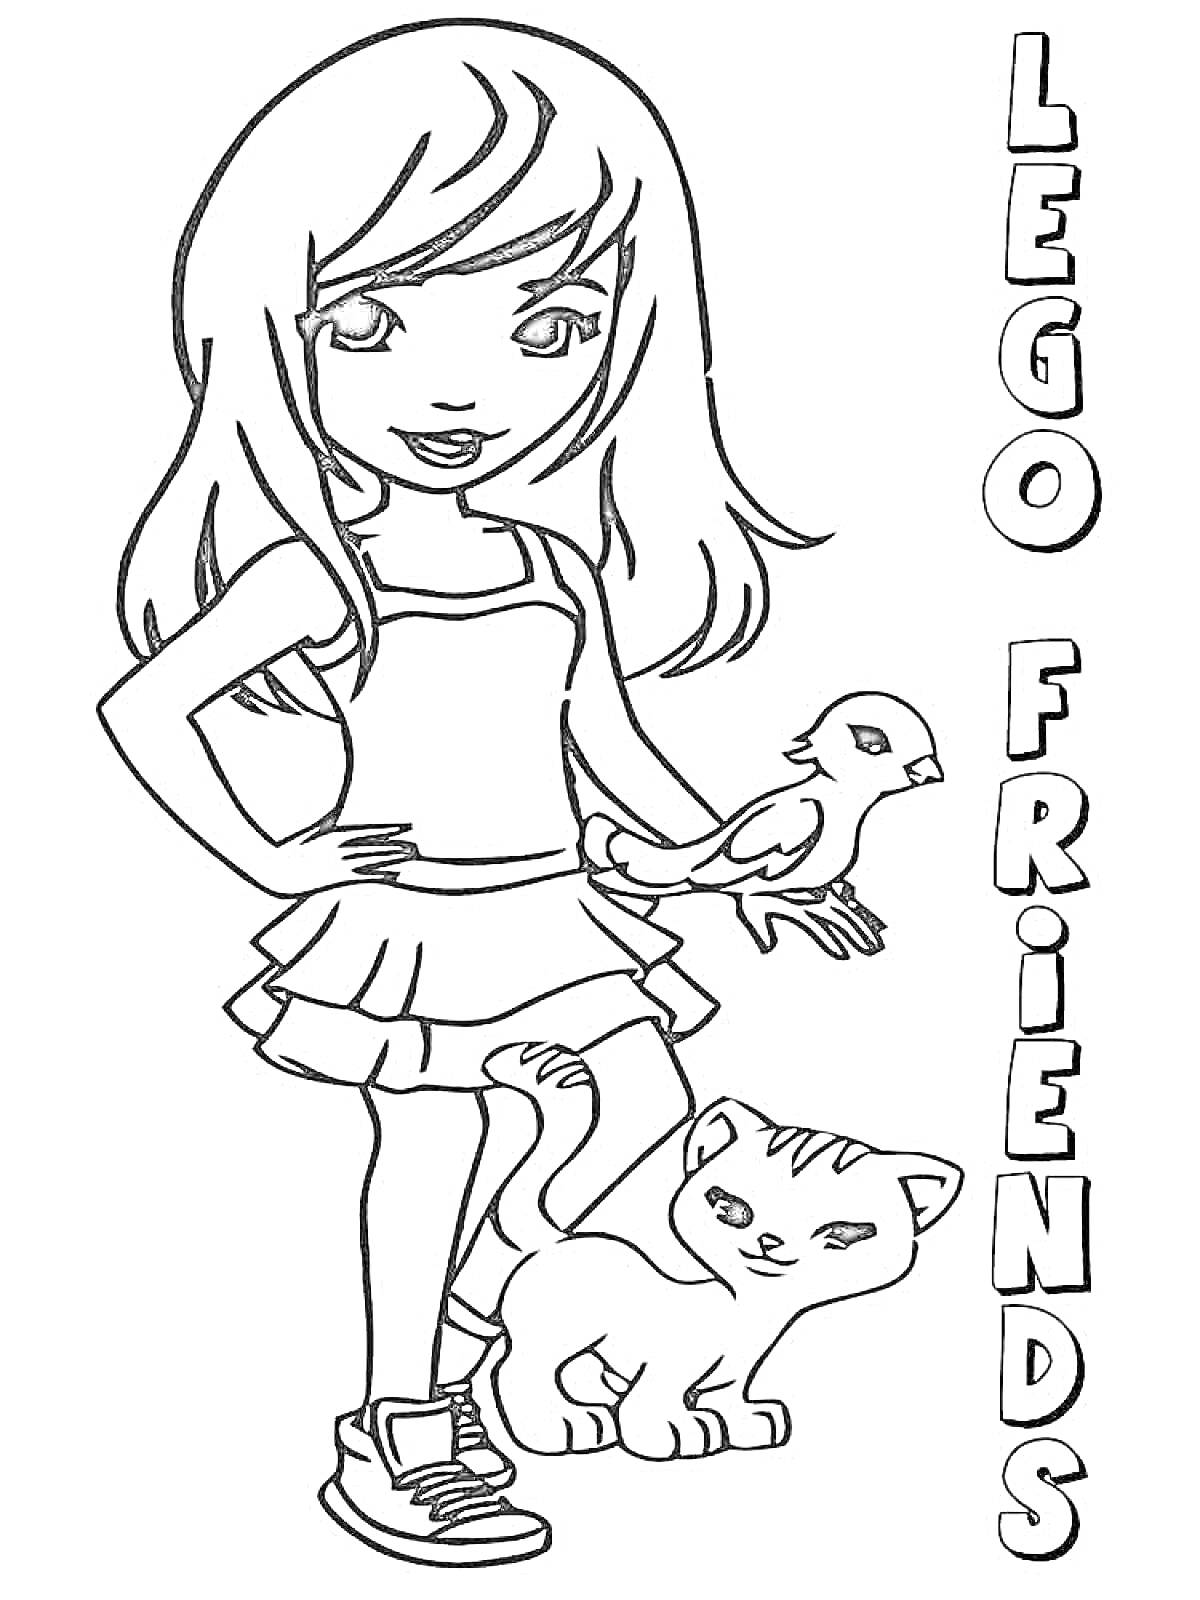 Раскраска Девочка с попугаем на руке и котенком у ее ног, надпись LEGO Friends сбоку